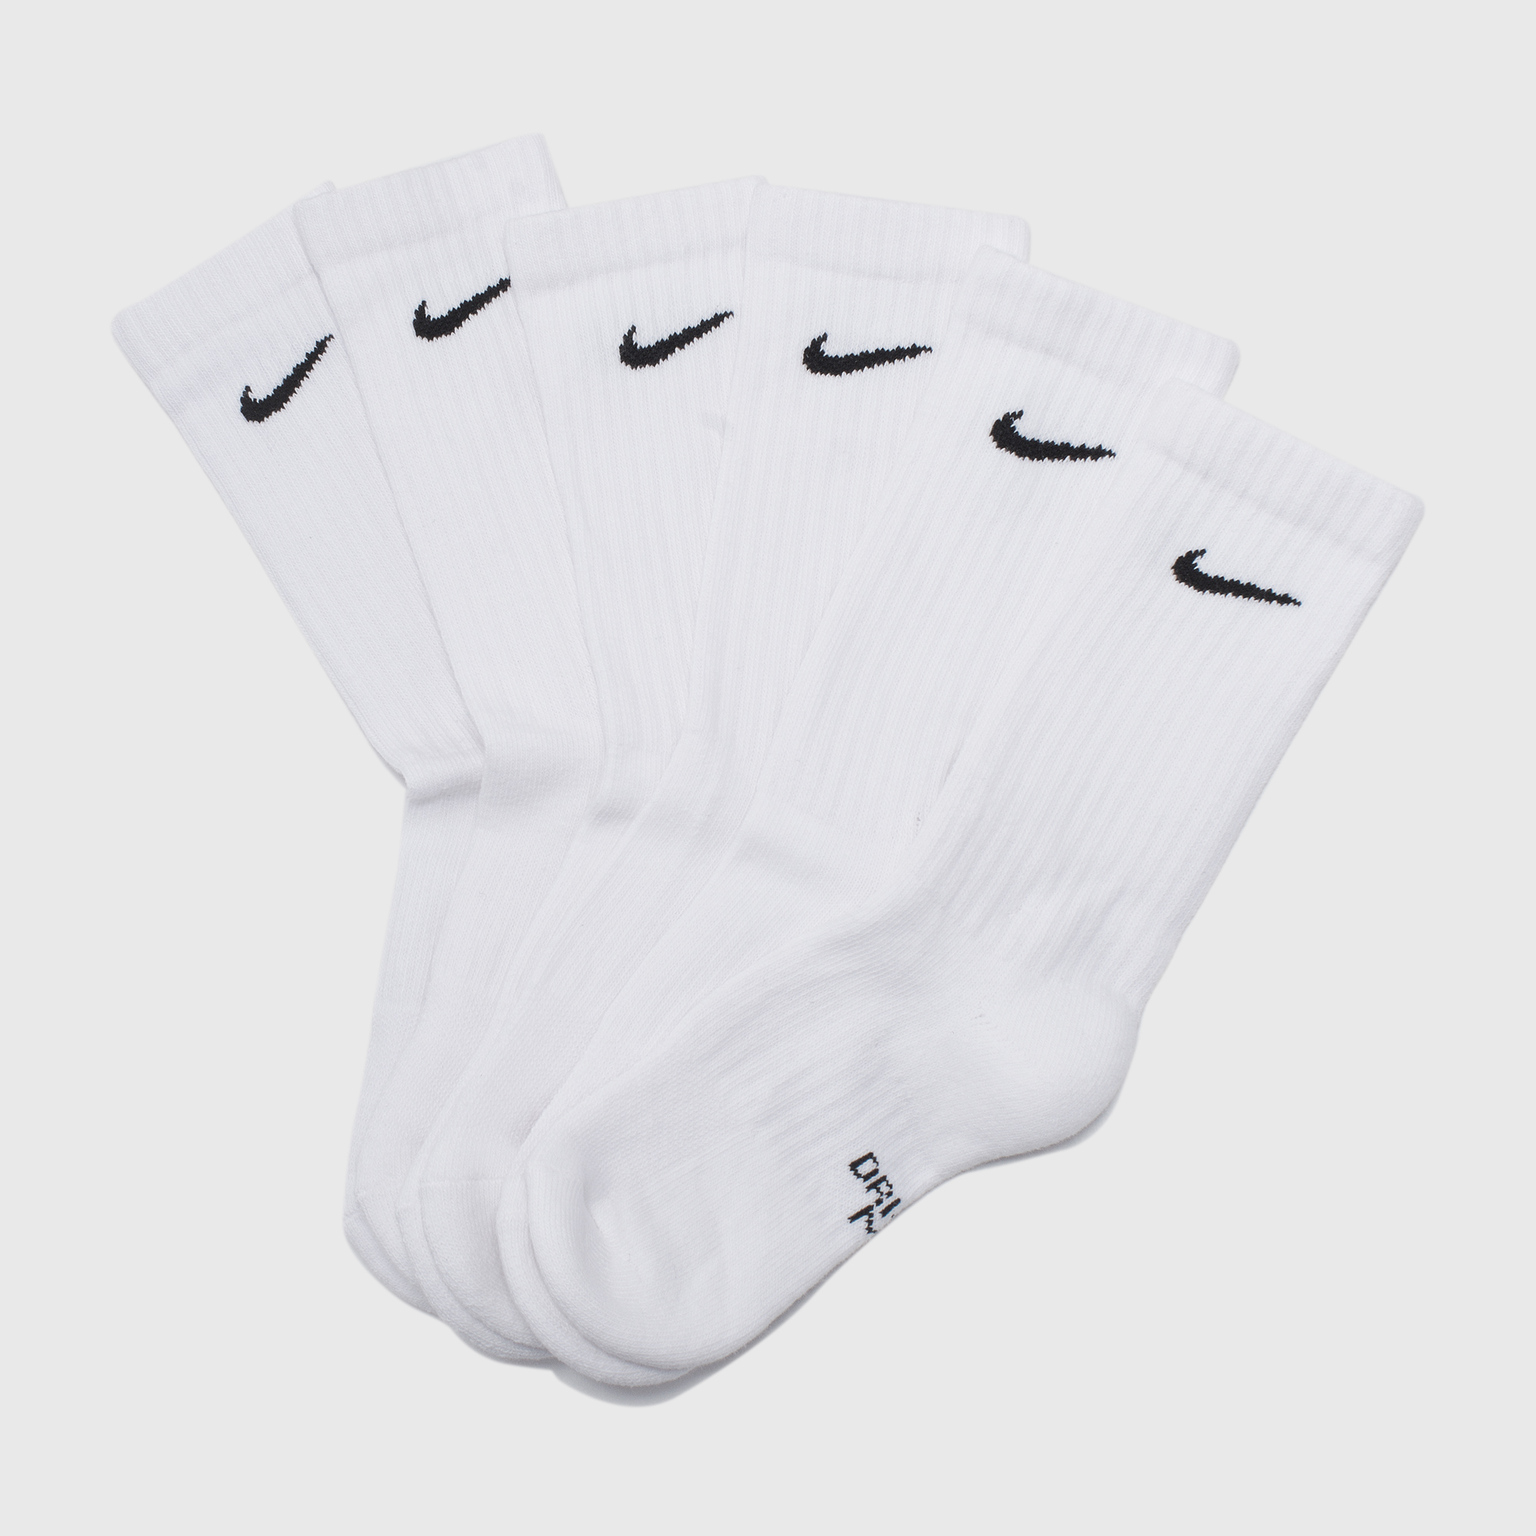 Комплект носков (3 пары) Nike Every Cush Crew SX6842-100